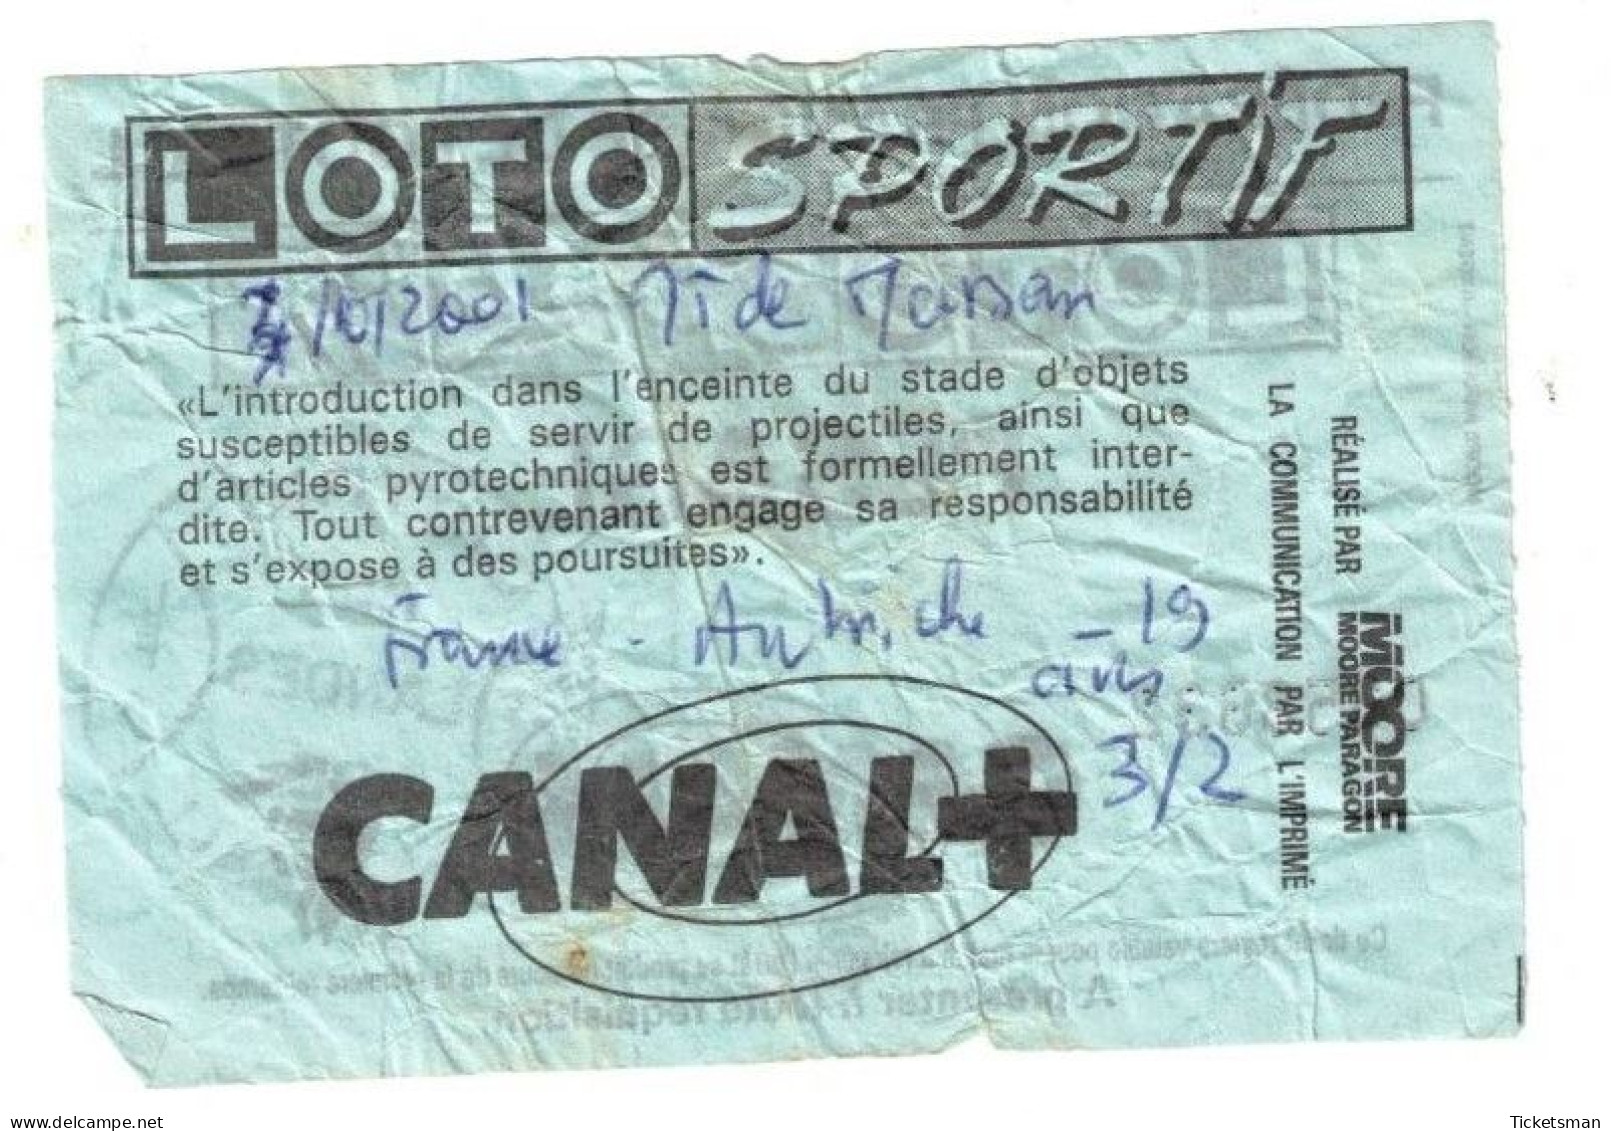 Football Ticket Billet Jegy Biglietto Eintrittskarte France - Autriche österreich 03/10/2001 "U19" - Toegangskaarten